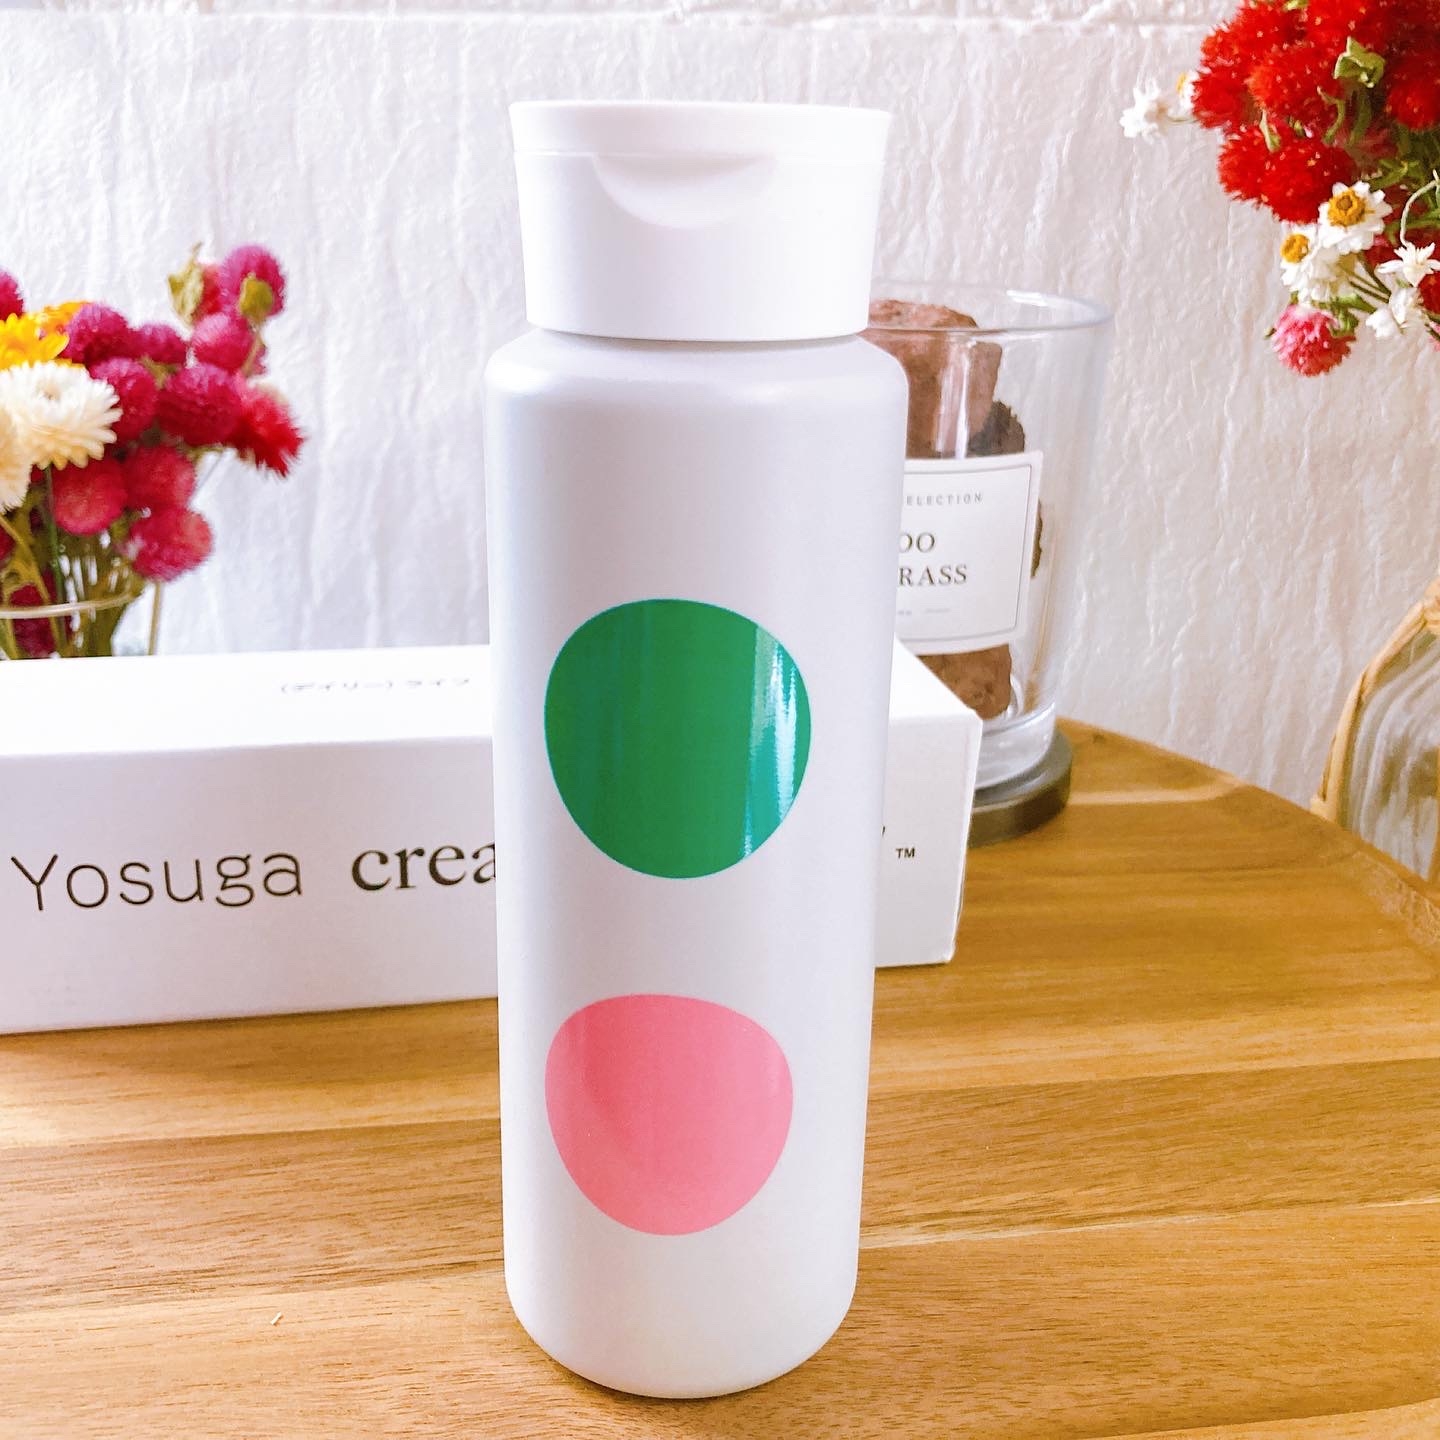 Yosuga cream for body
(ヨスガクリームフォーボディ)に関するメグさんの口コミ画像1